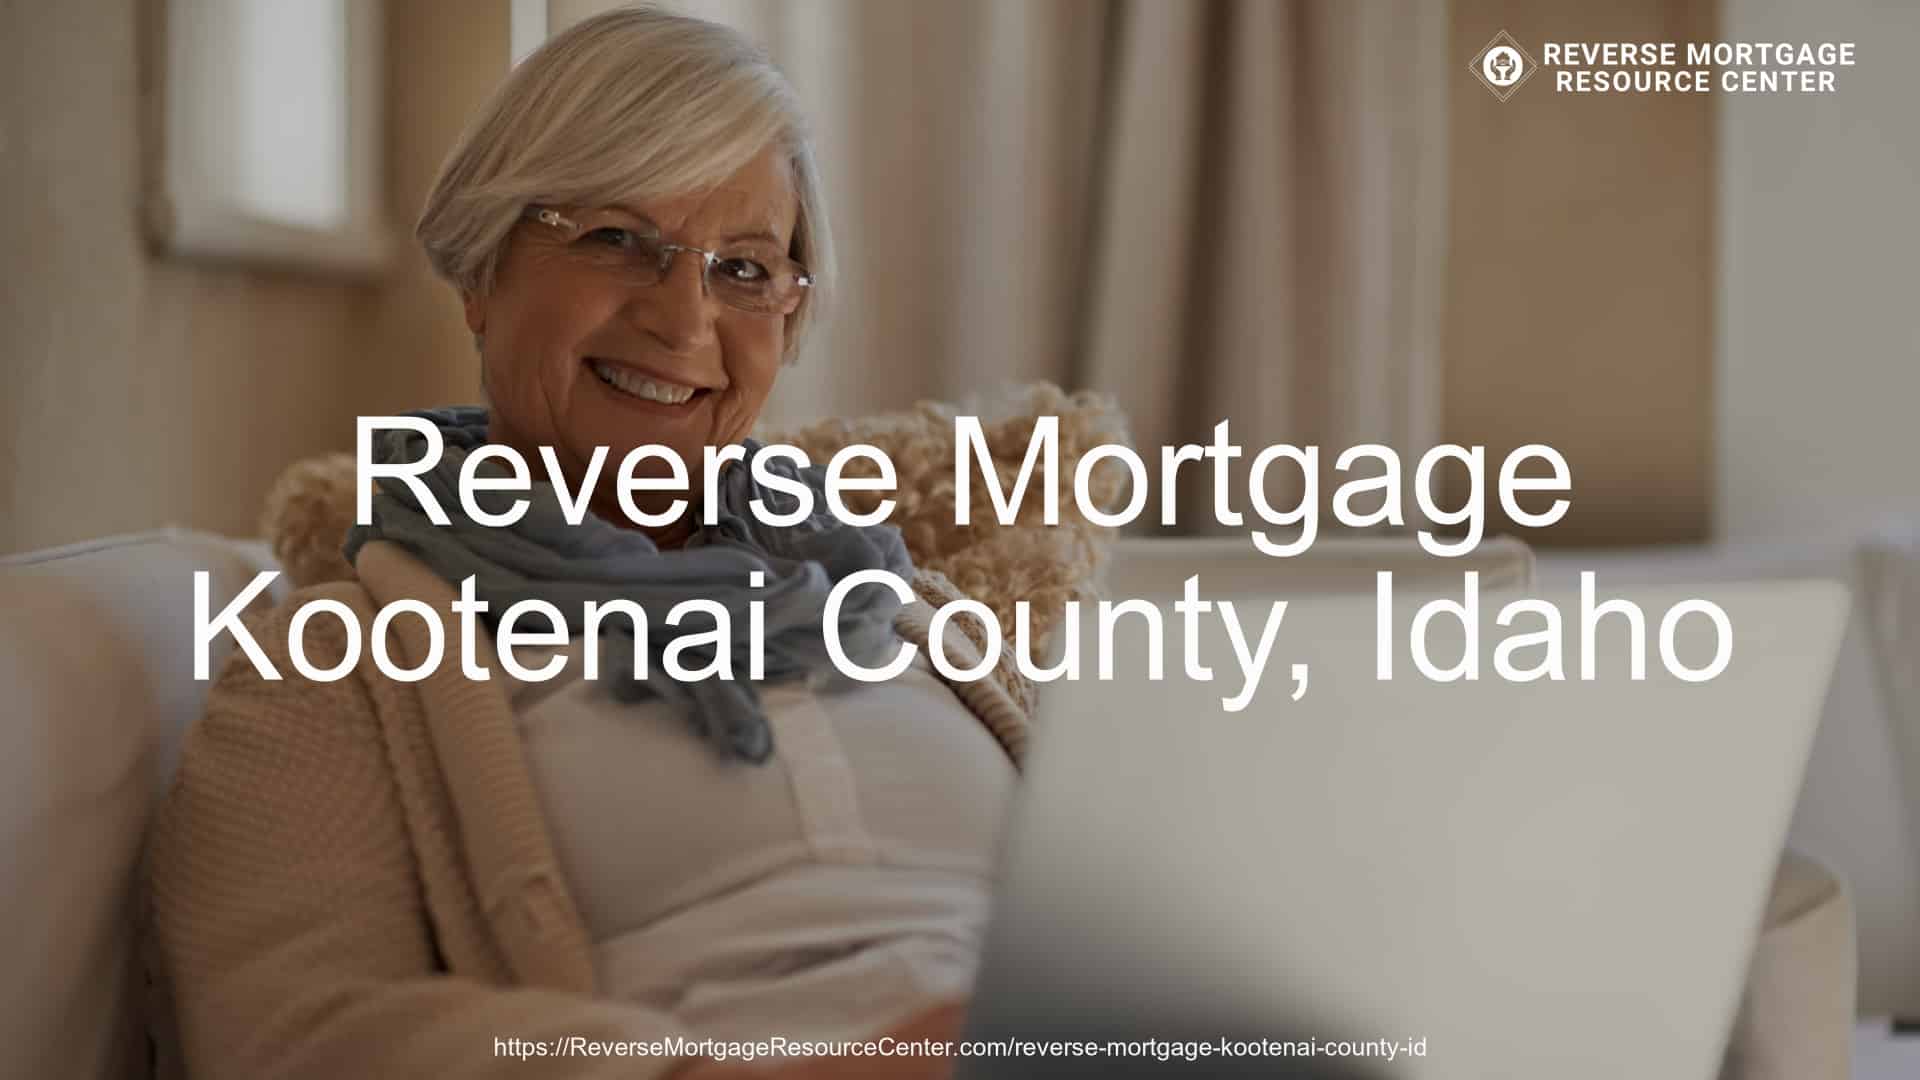 Reverse Mortgage Loans in Kootenai County Idaho